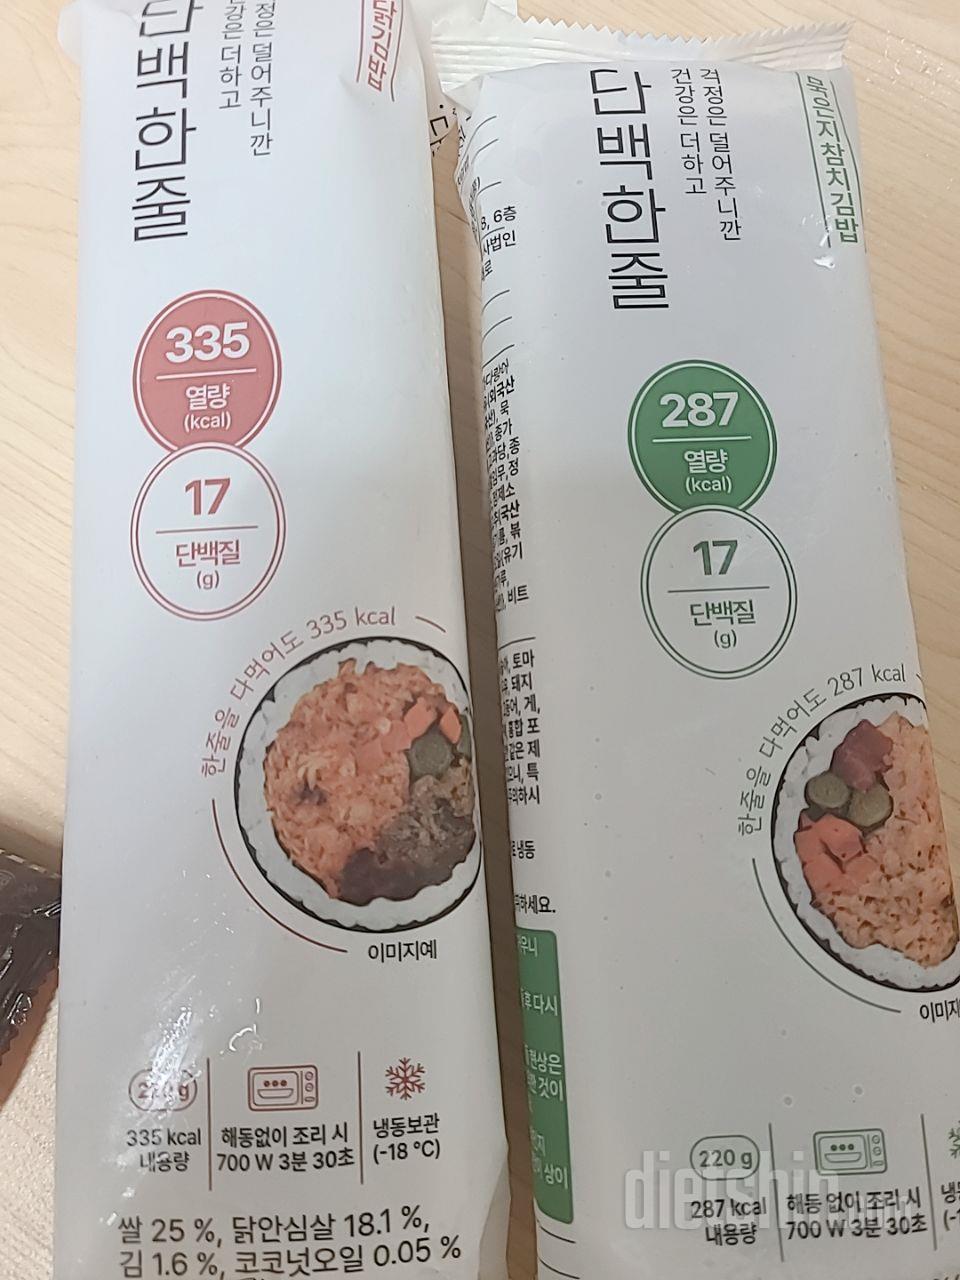 김밥  첨사묵어봣는데

맛나네용

가